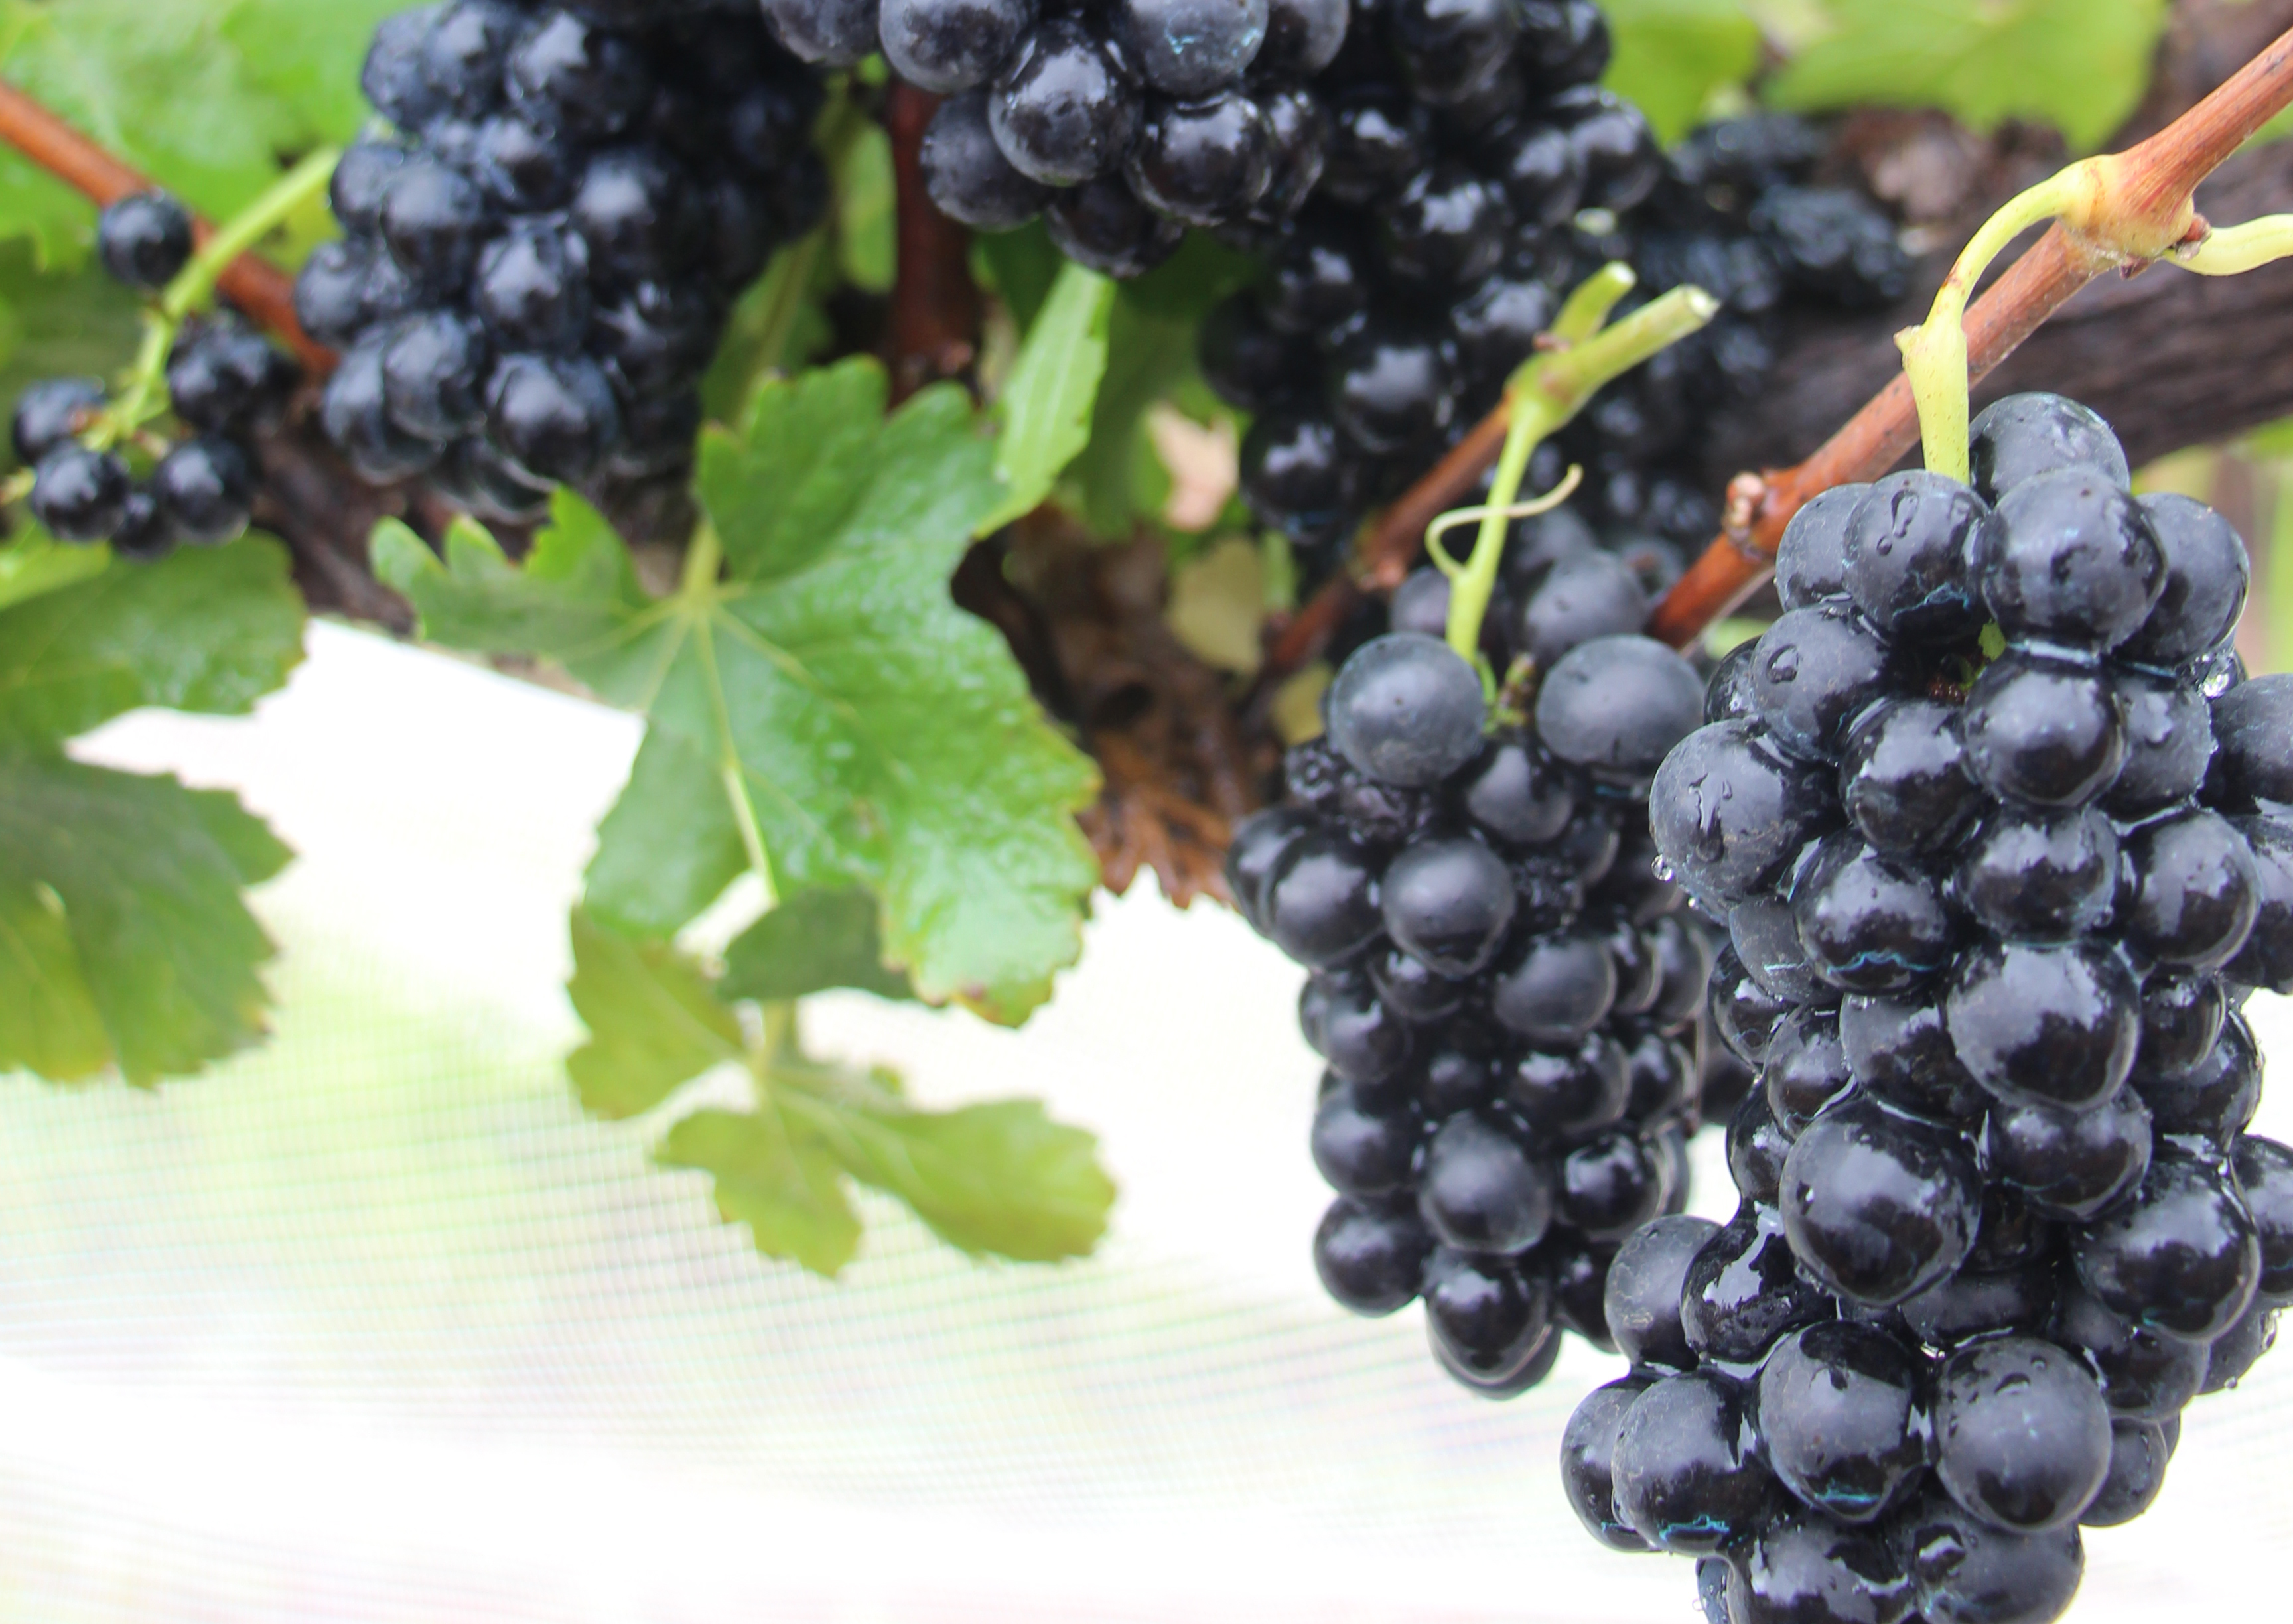 1º Frutisul vai abordar potencial do Sul de Minas Gerais para a produção de vinhos finos de qualidade